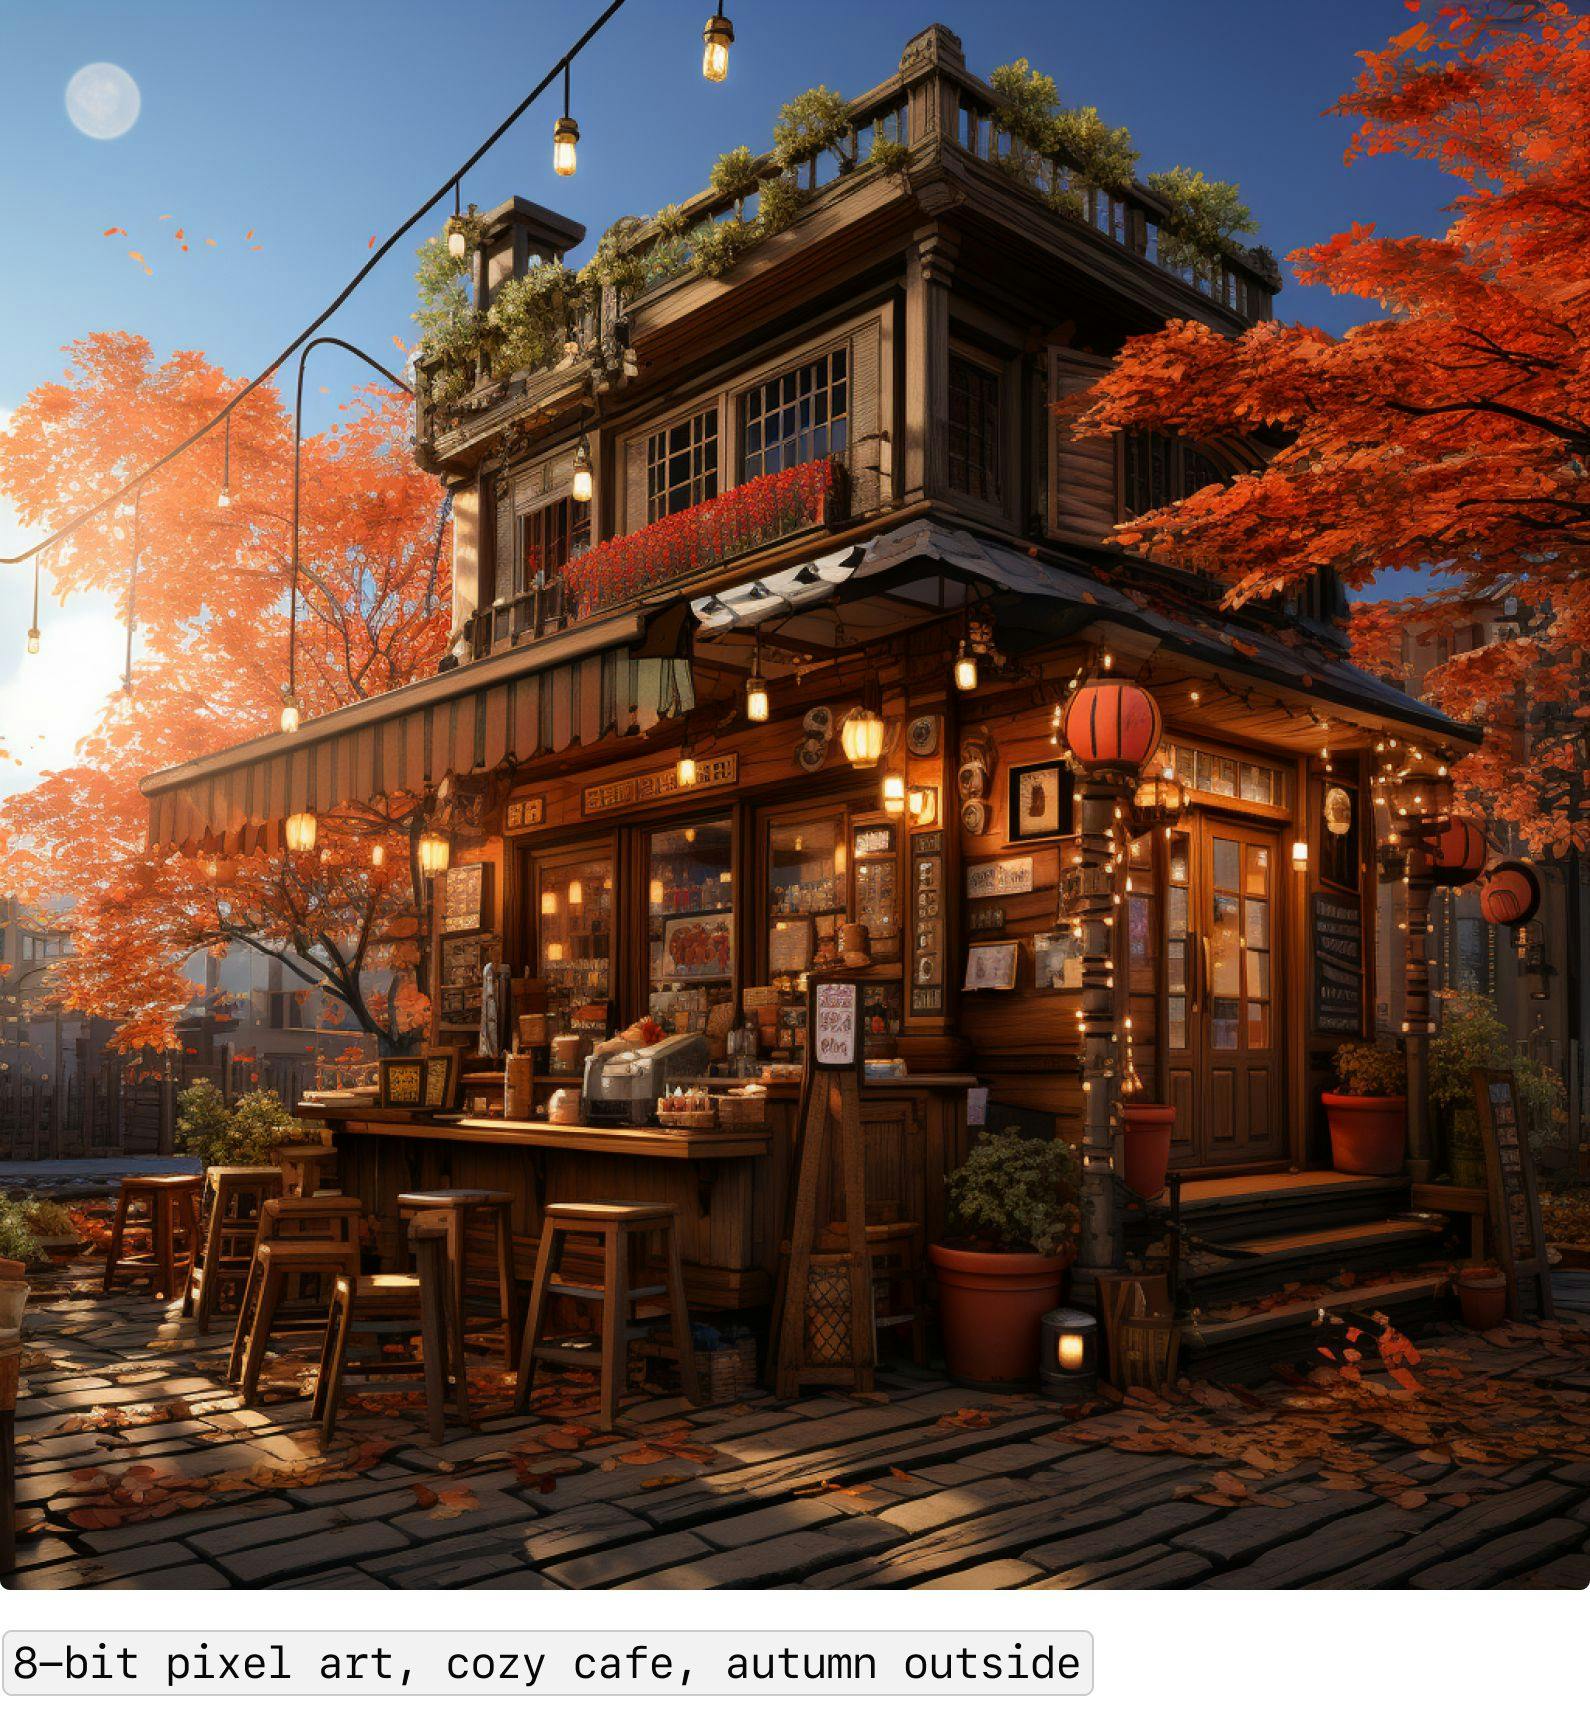 8-bit pixel art, cozy cafe, autumn outside